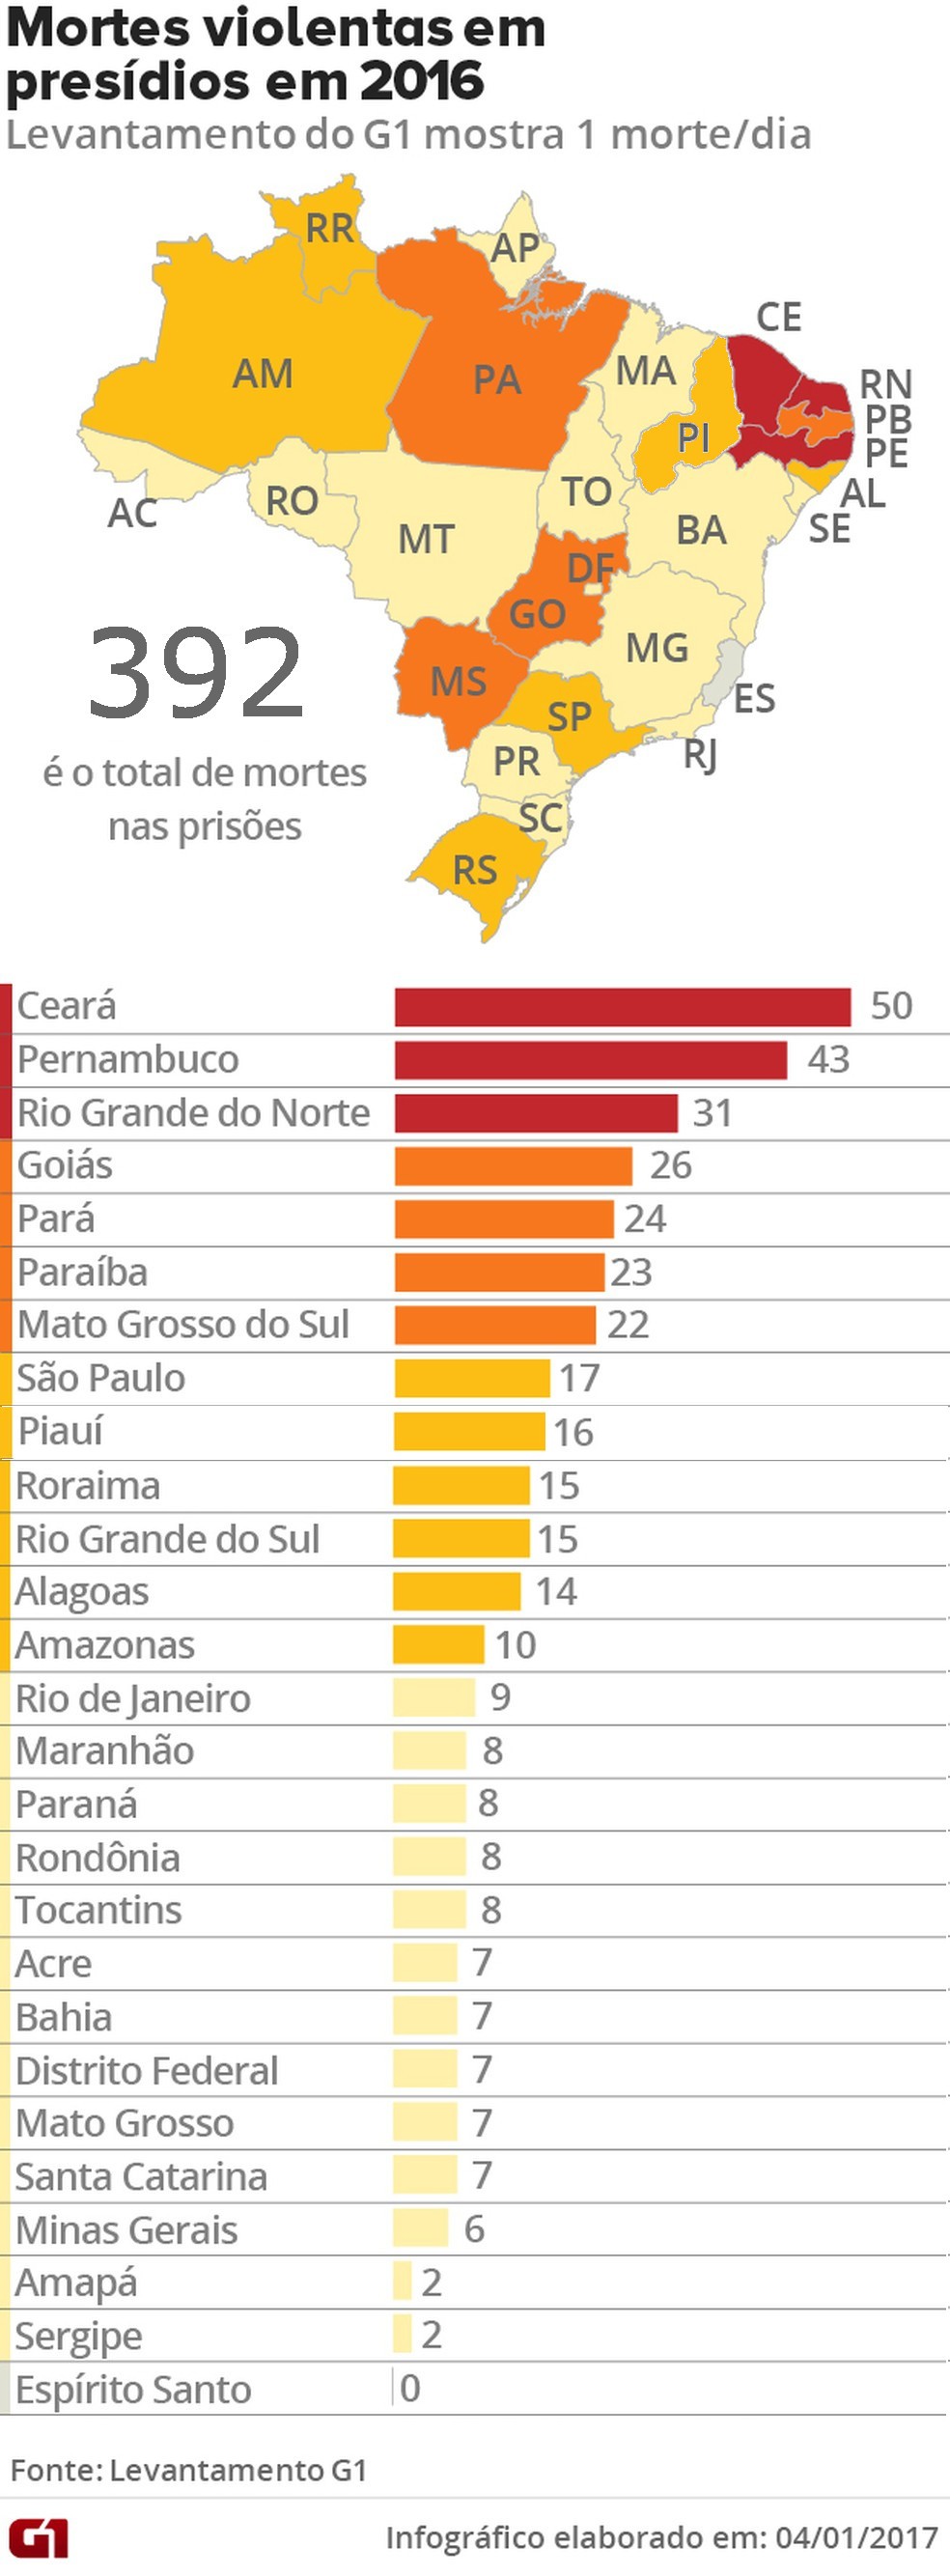 Brasil teve quase 400 mortes violentas nos presídios em 2016 (Foto: Editoria de Arte/G1)